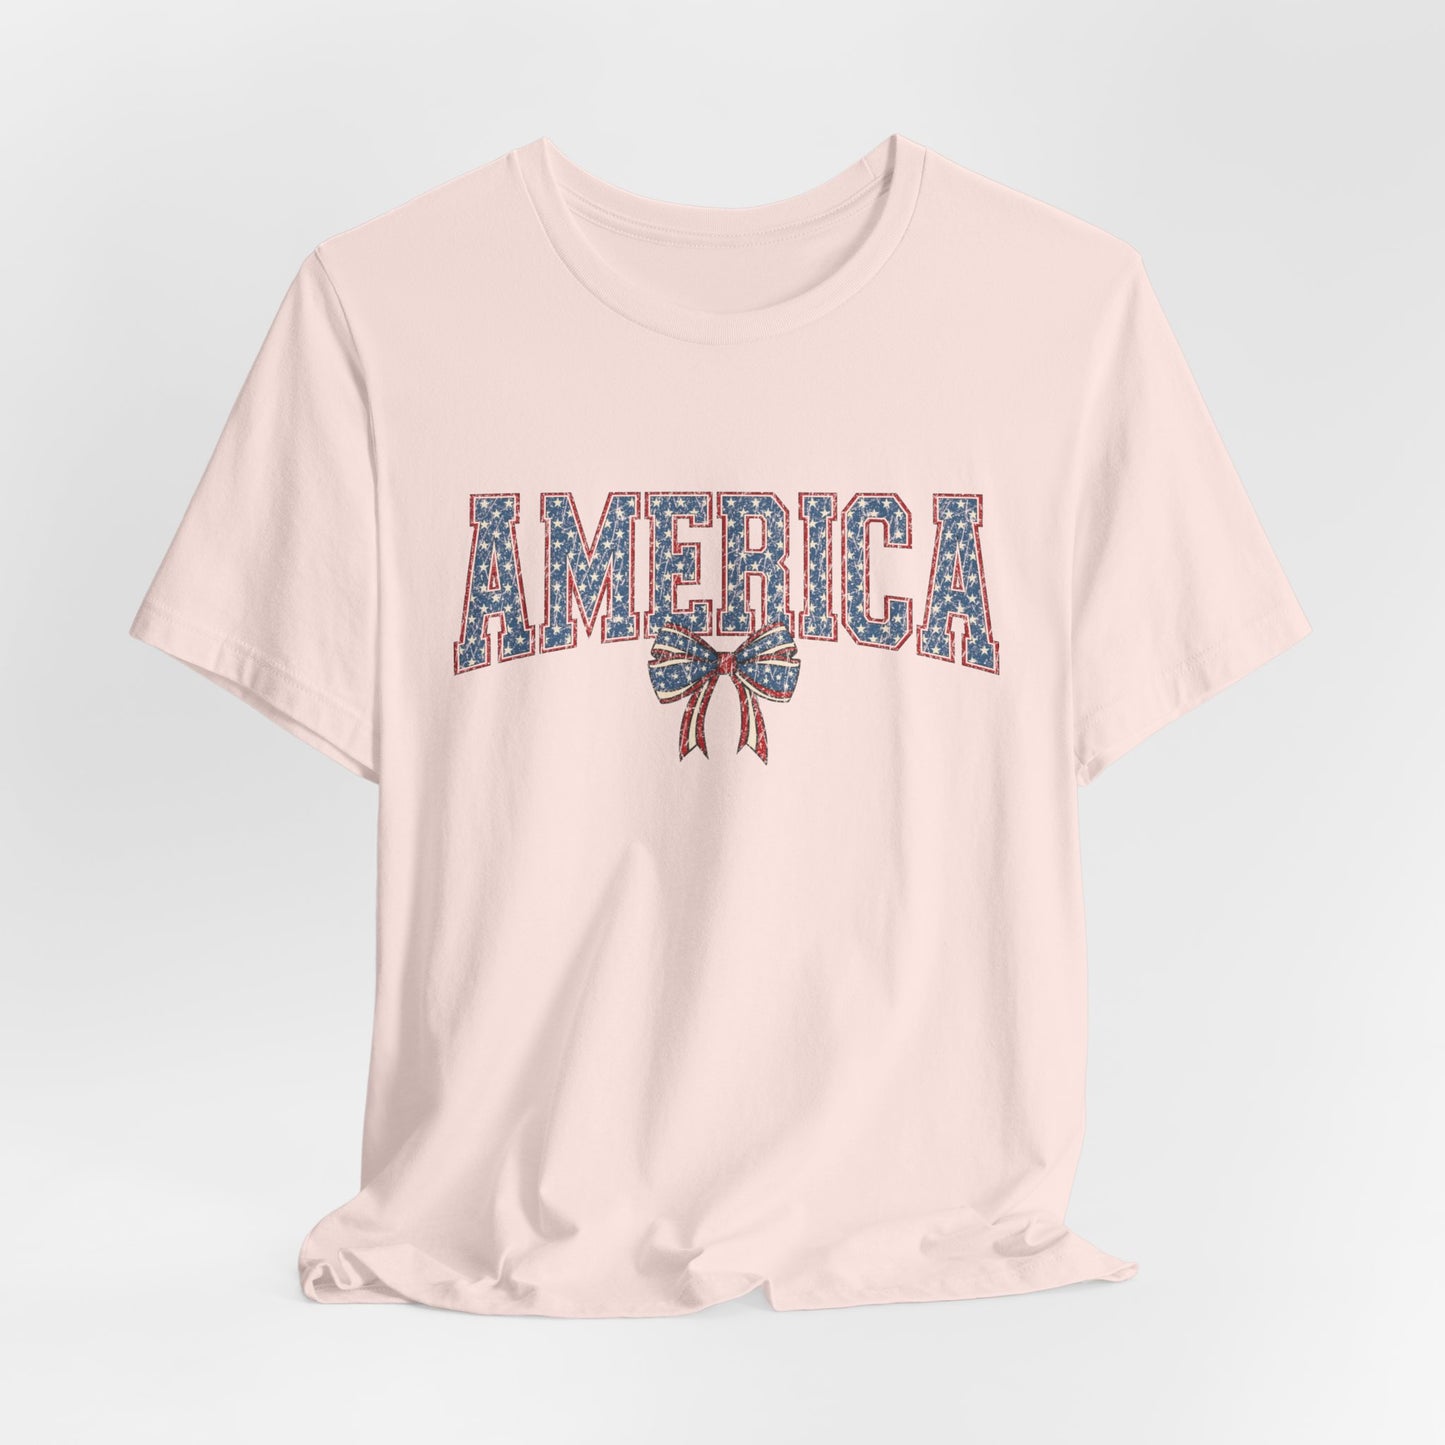 America Women's Patriotic Short Sleeve Tee